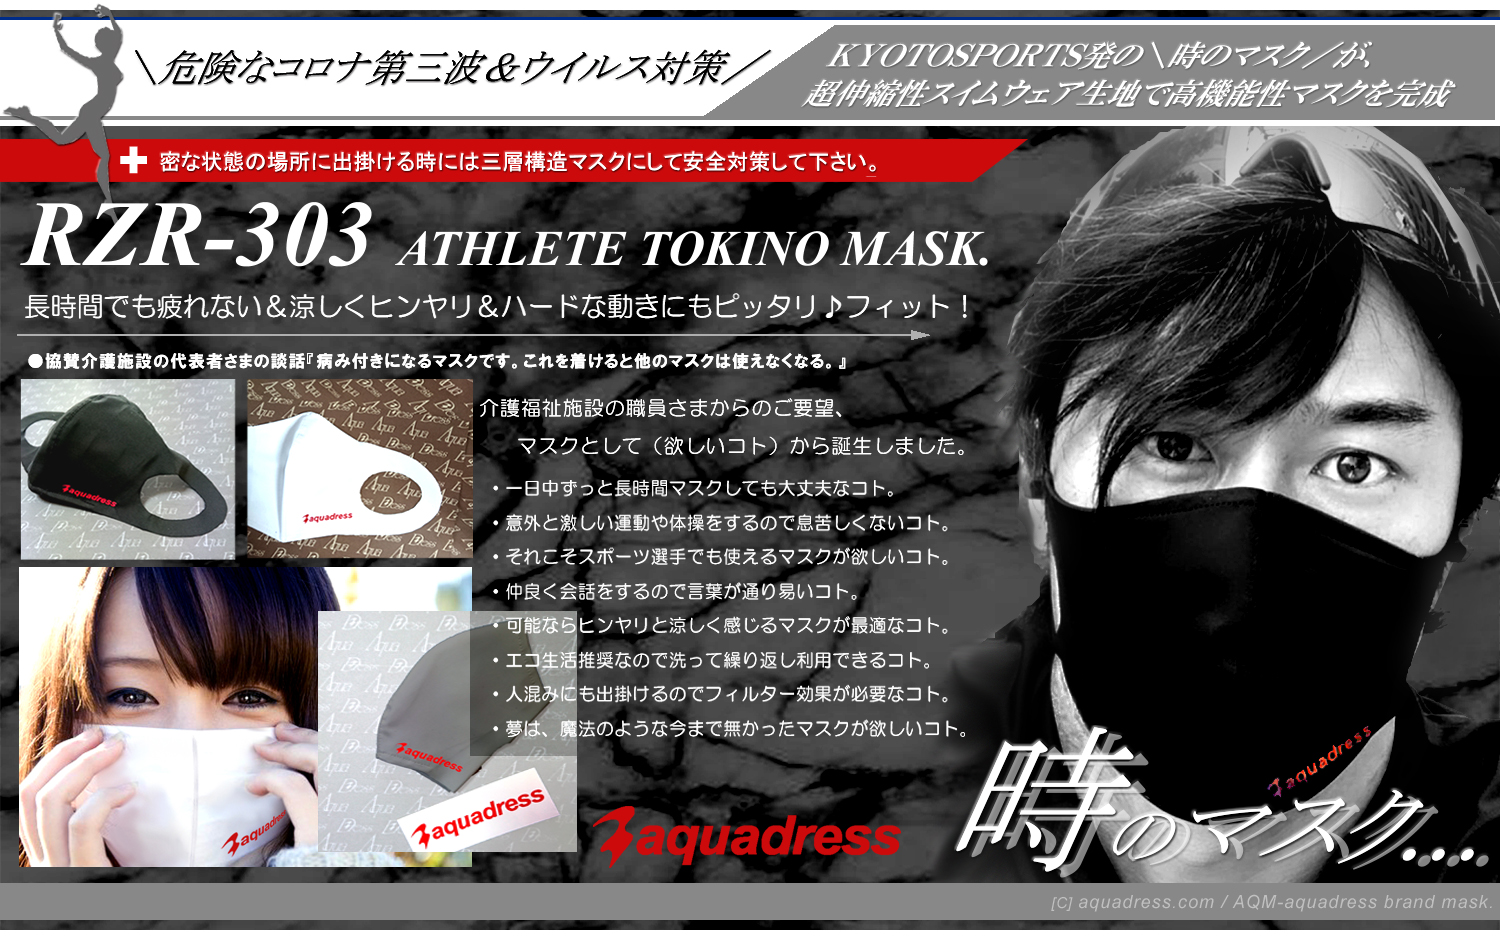 RZR-303＼アクア水着スポーツマスク／高機能性マスク：RZR-303＝危険な新型コロナウイルスや、インフルエンザ対策を目的に開発したプロスポーツ選手や、ハードワークをこなす介護福祉施設従事者、医療従事者の日常を快適に過ごす為の機能性スポーツマスク【RZR-303：時のマスク】です。